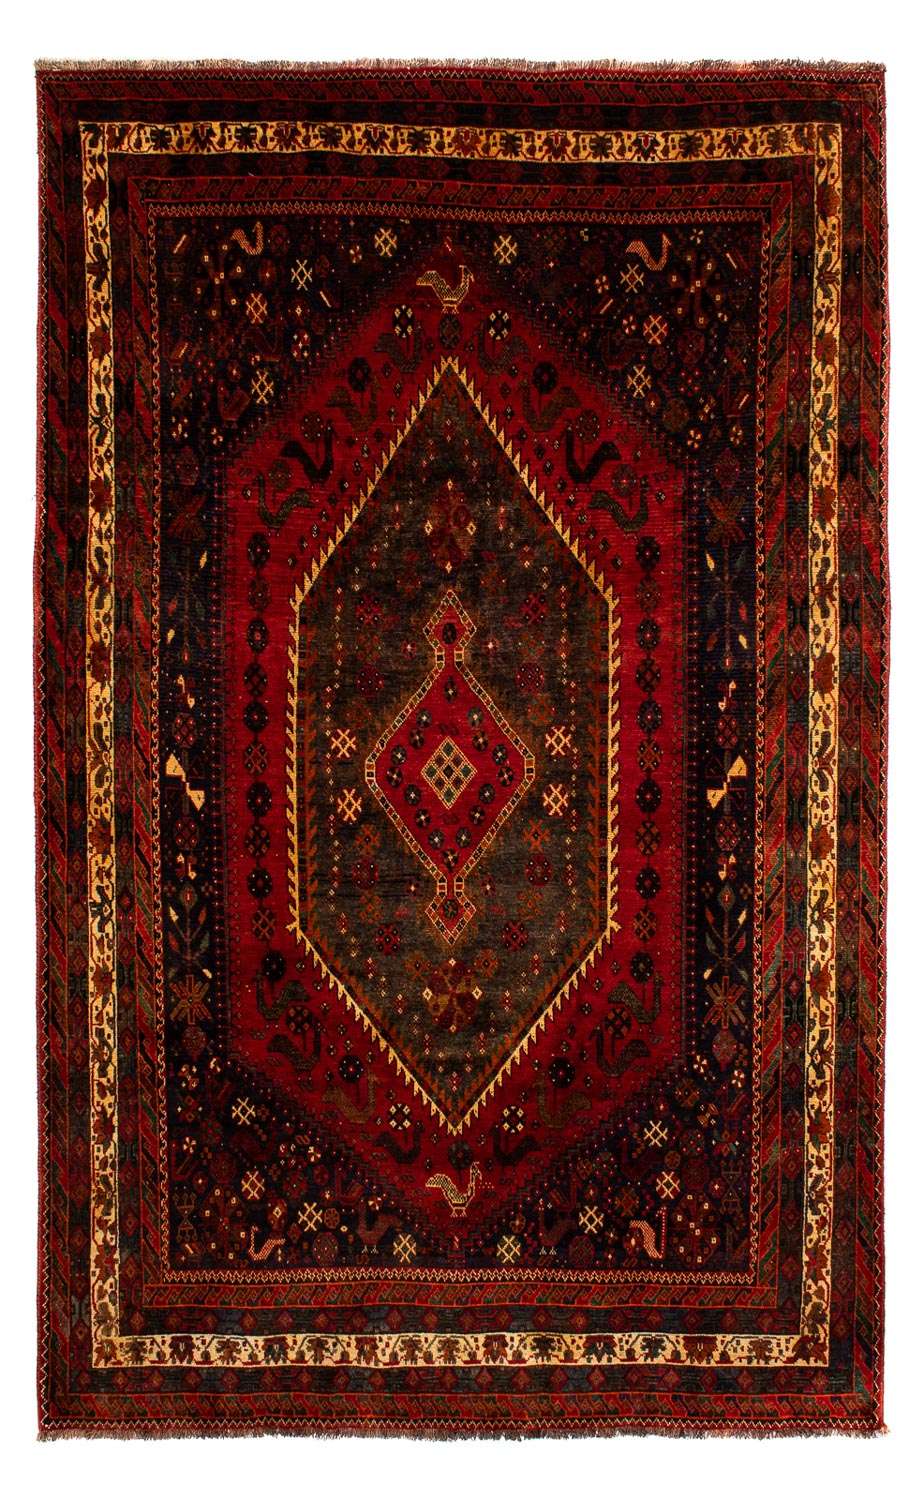 Alfombra persa - Nómada - 312 x 208 cm - rojo oscuro